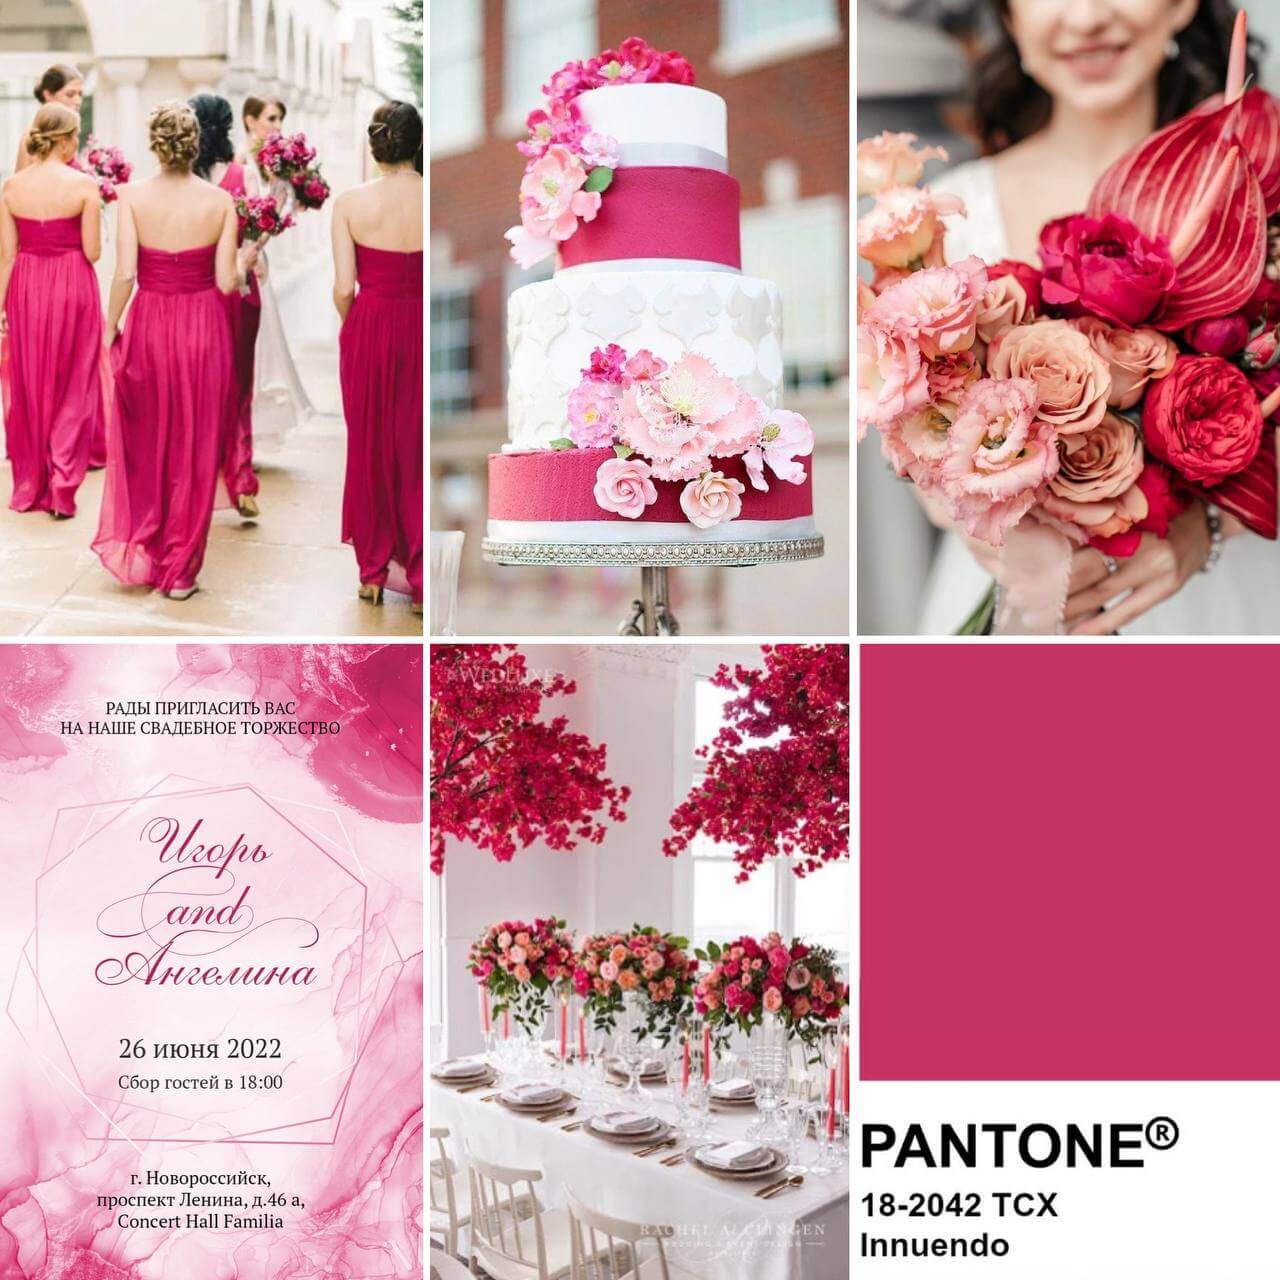 Ярко-розовая свадьба и фуксия приглашения в цвете намек